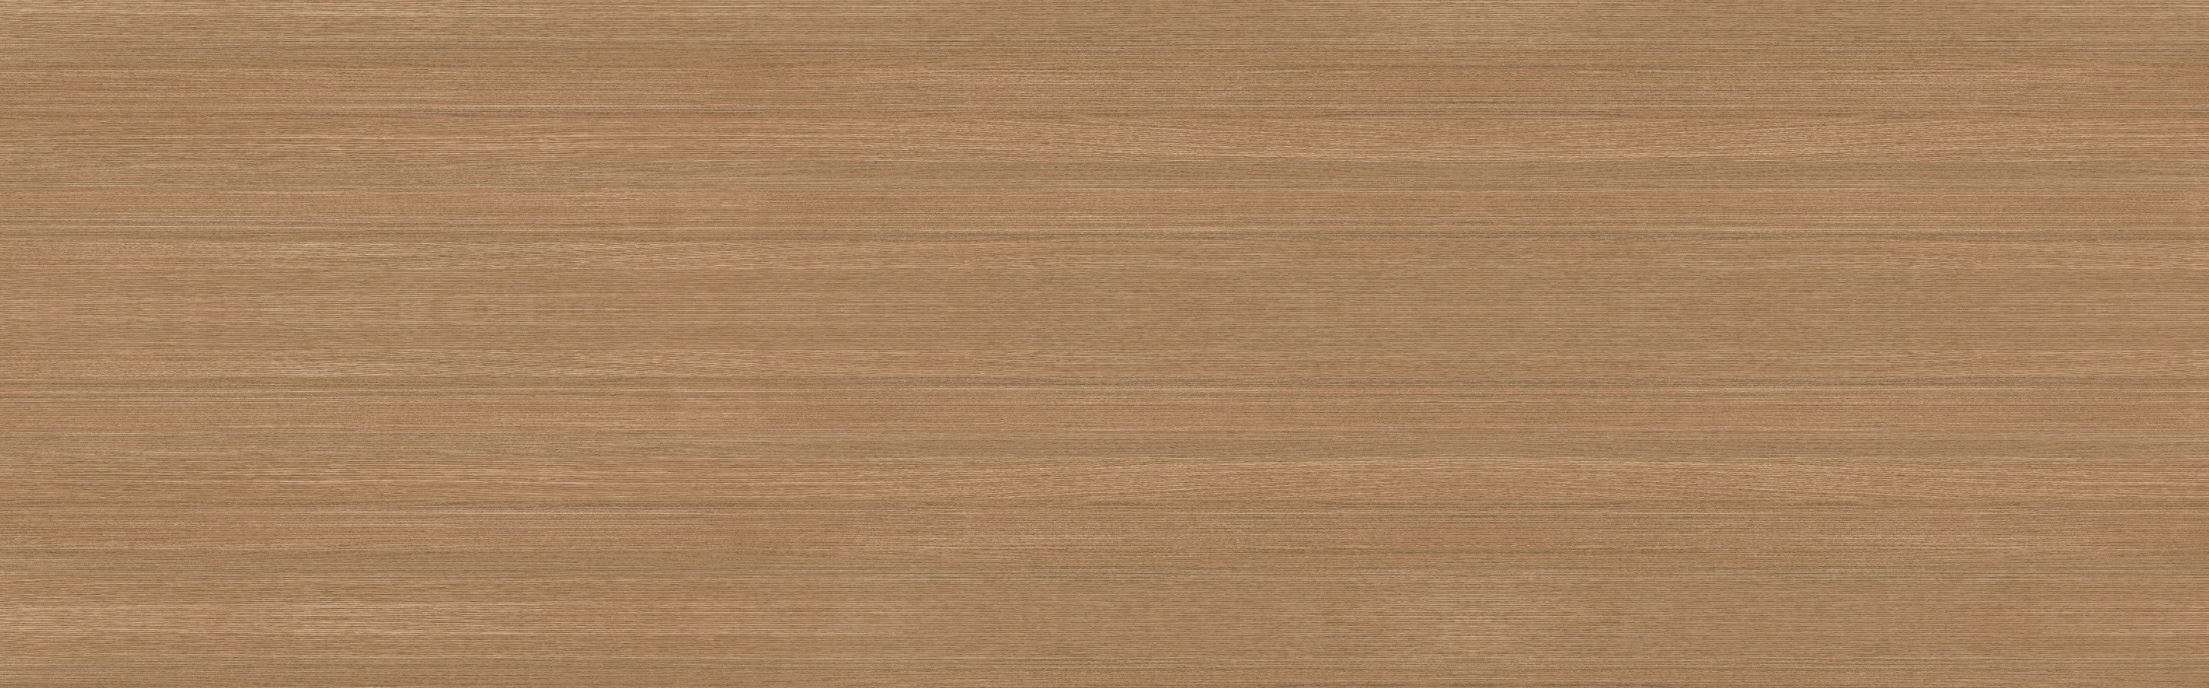 Широкоформатный керамогранит Zodiac Sintered Stone коричневый M26806, цвет коричневый, поверхность матовая, прямоугольник, 800x2600